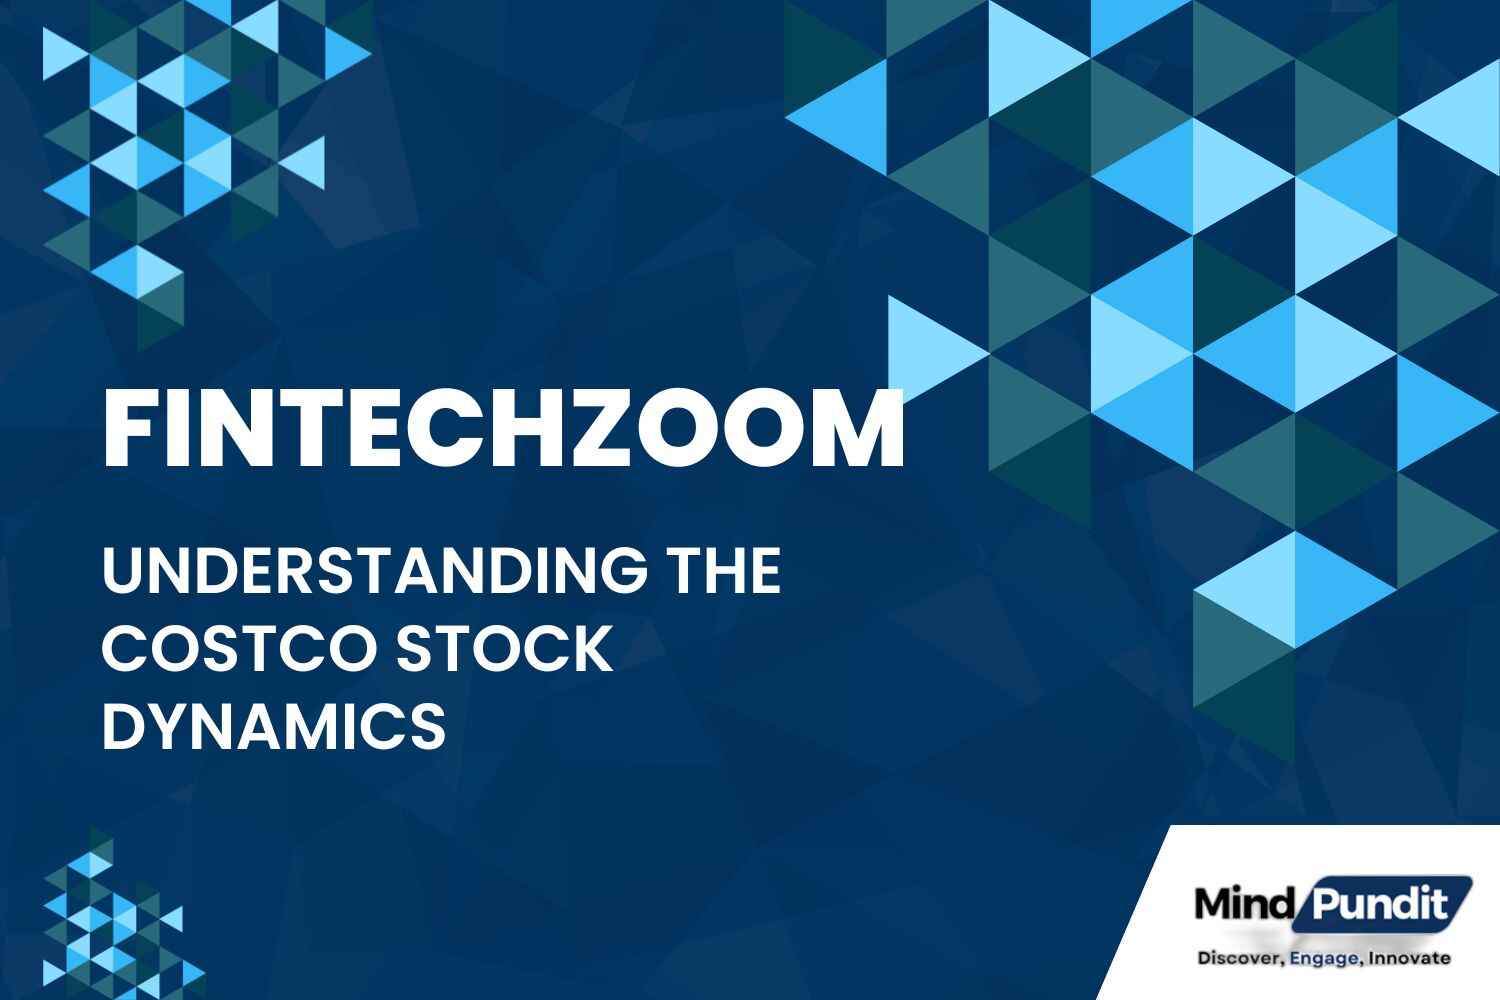 FintechZoom costco stock